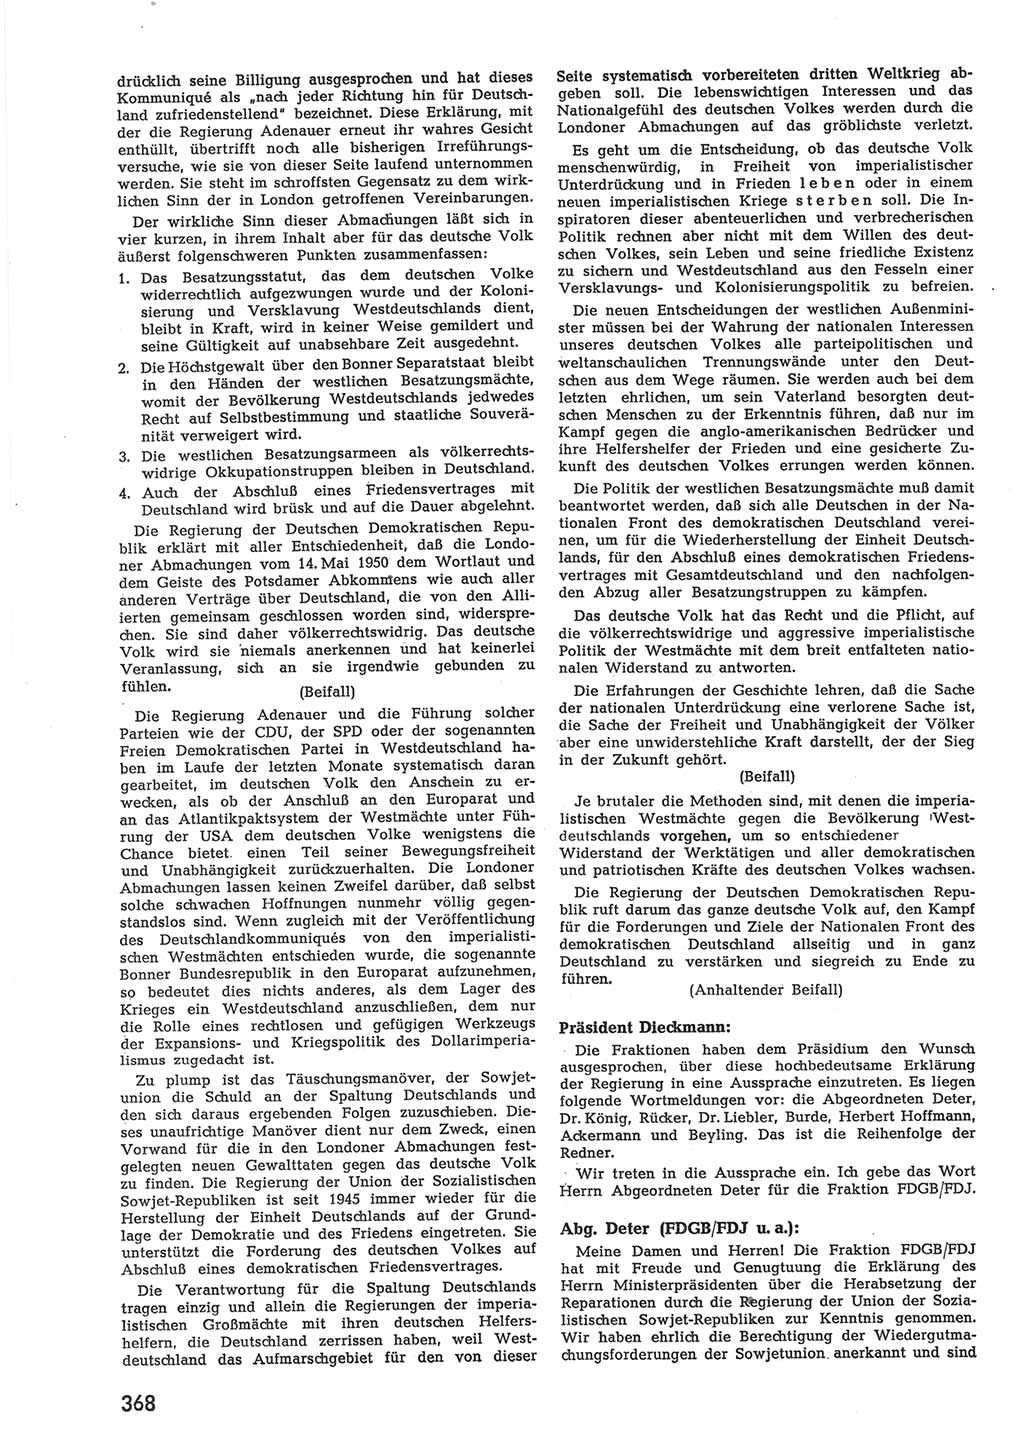 Provisorische Volkskammer (VK) der Deutschen Demokratischen Republik (DDR) 1949-1950, Dokument 386 (Prov. VK DDR 1949-1950, Dok. 386)